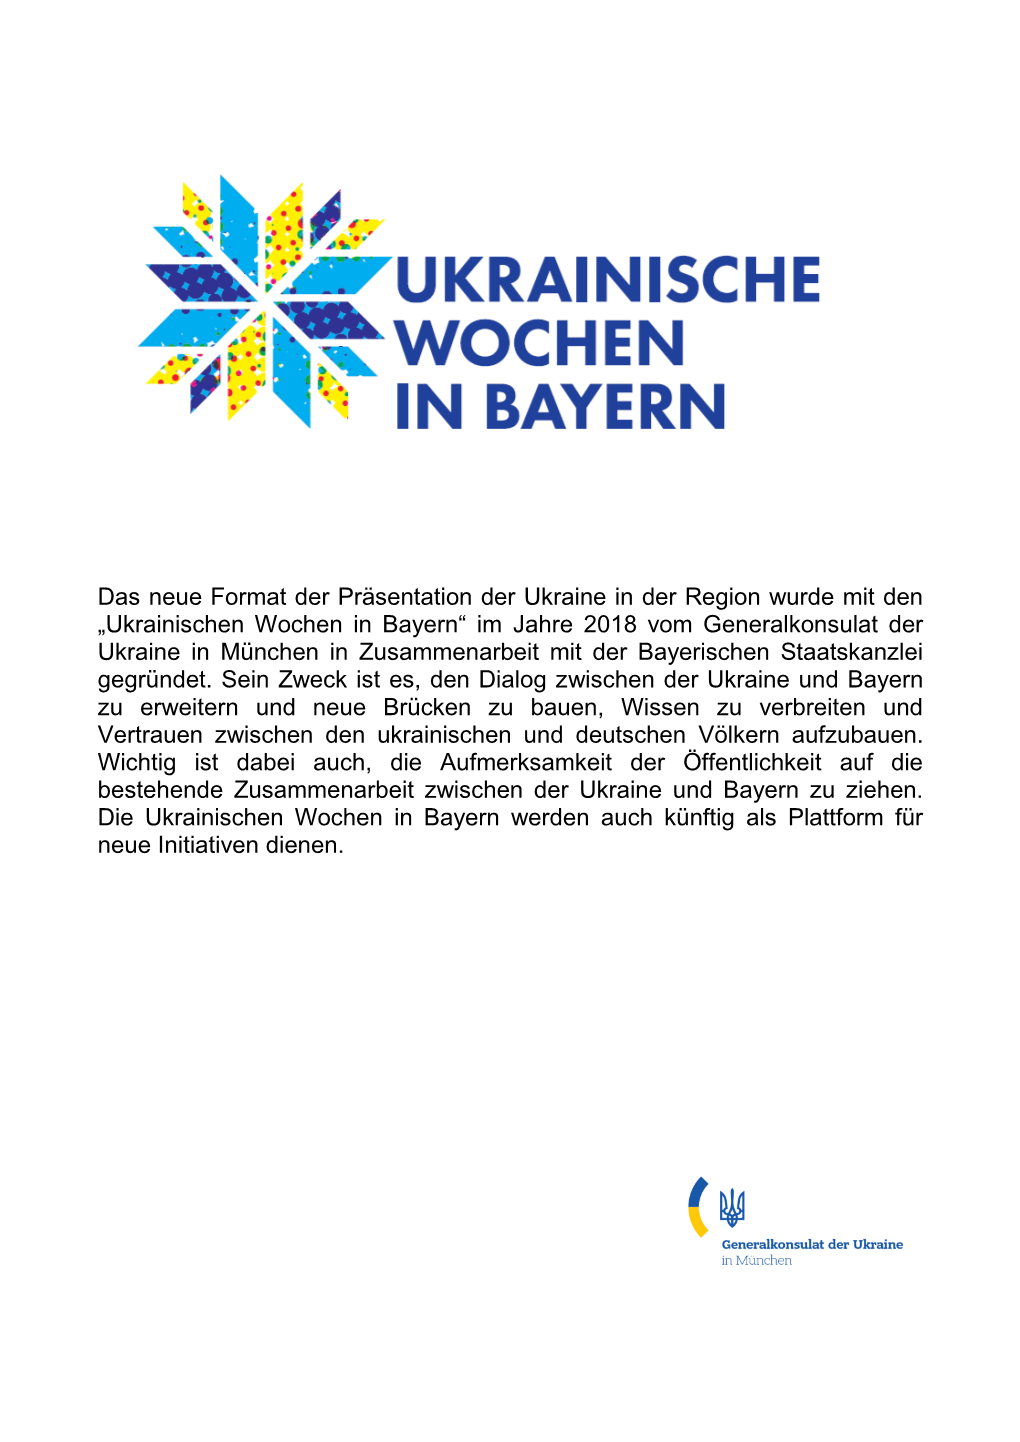 Das Neue Format Der Präsentation Der Ukraine in Der Region Wurde Mit Den „Ukrainischen Wochen in Bayern“ Im Jahre 2018